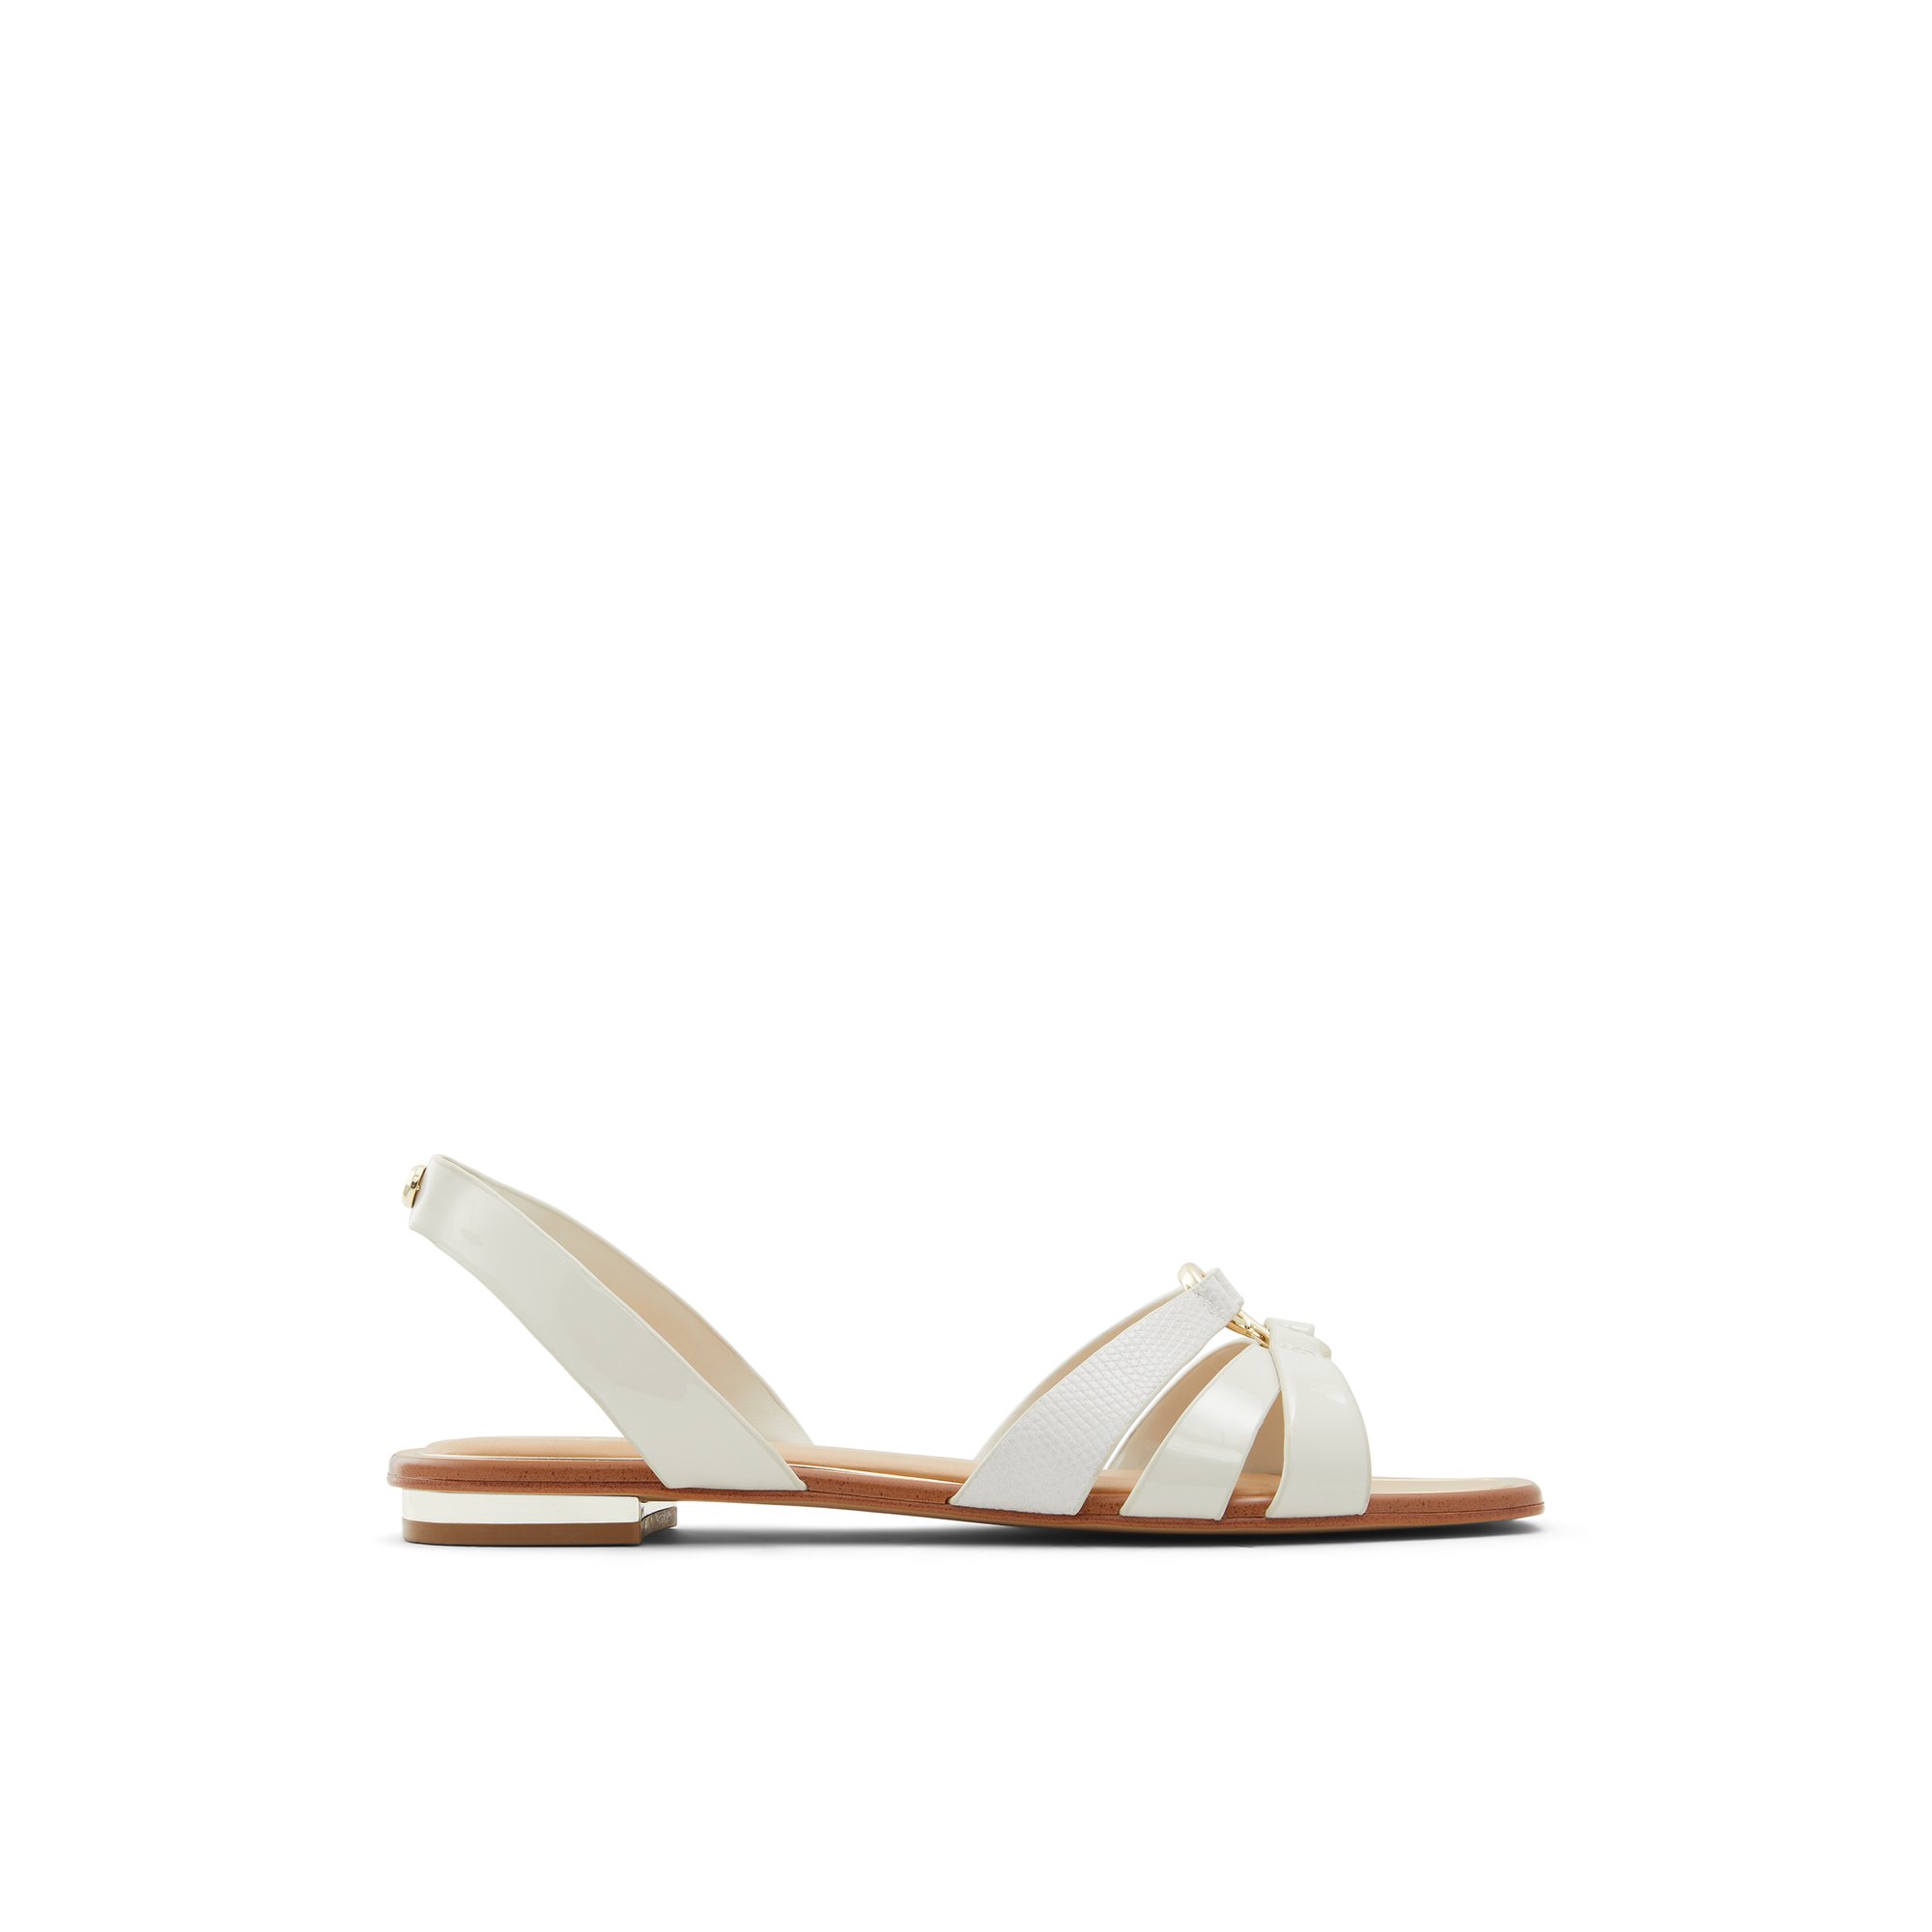 ALDO Marassi - Women's Flat Sandals - White